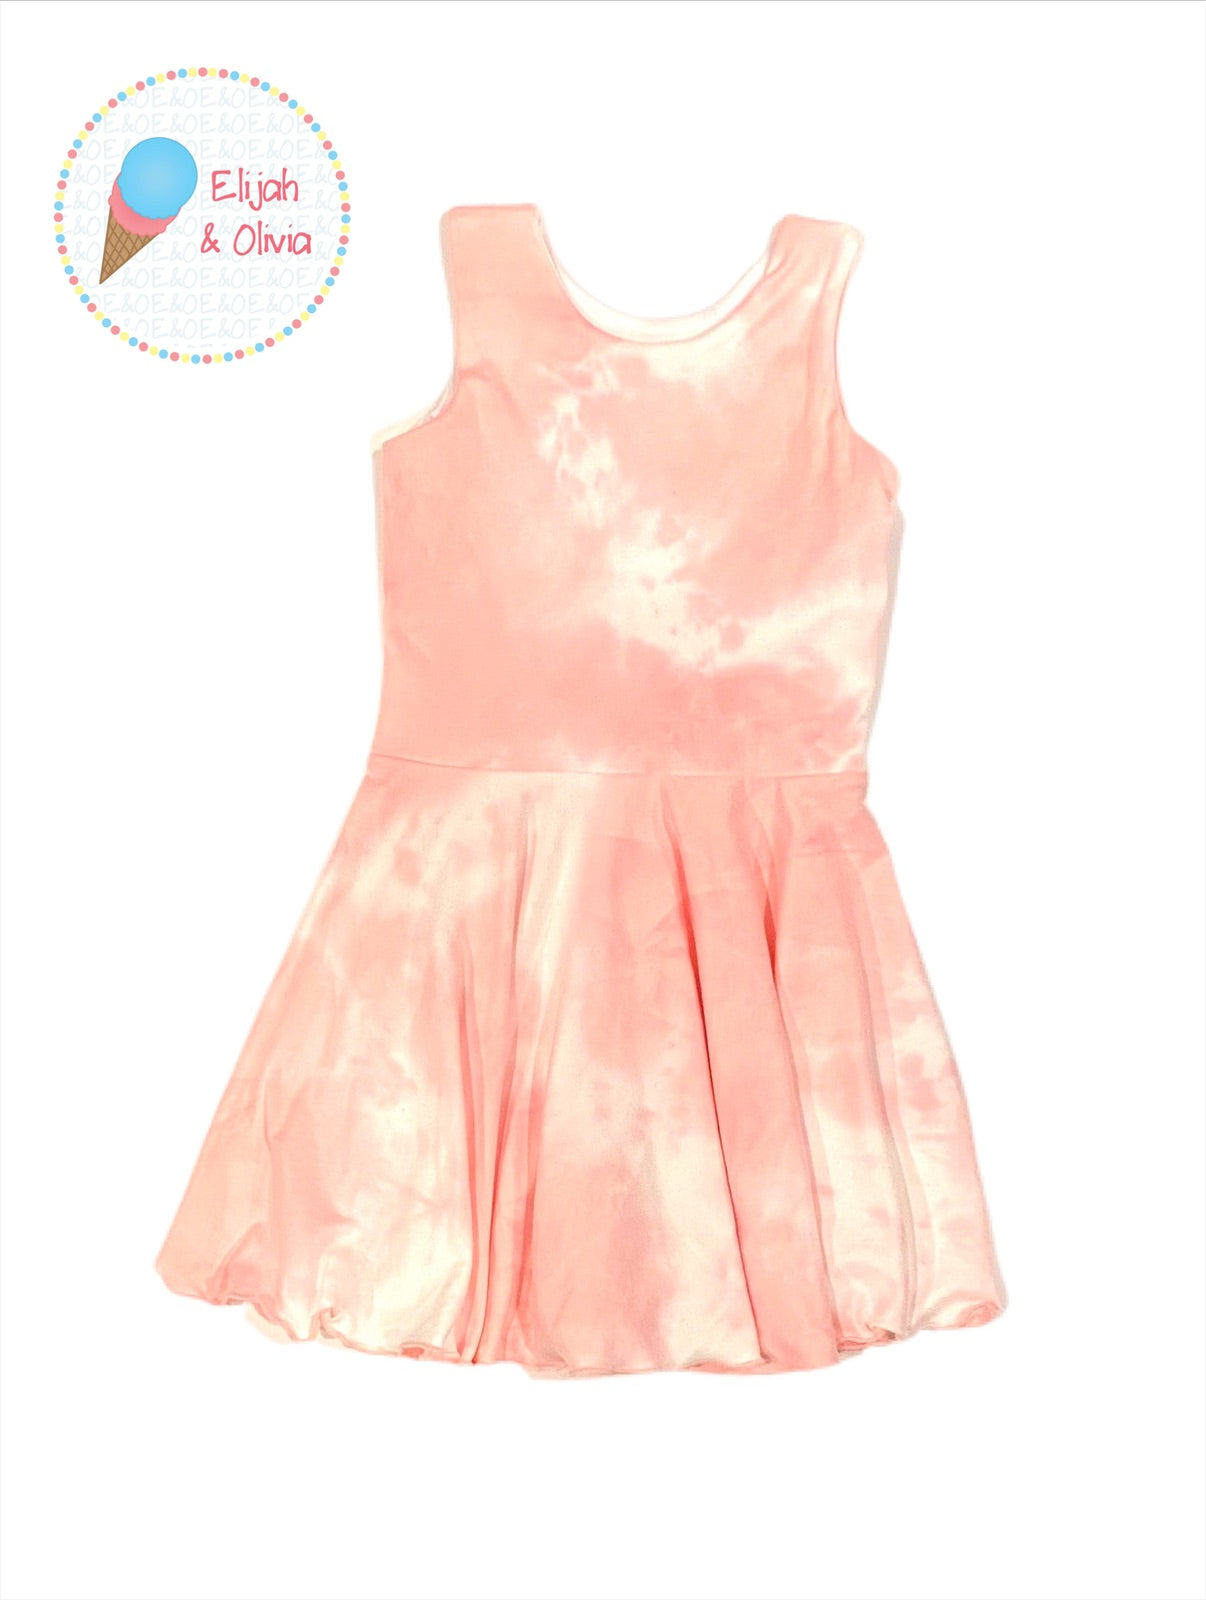 Chloe Dress- Pink & White Tie Dye